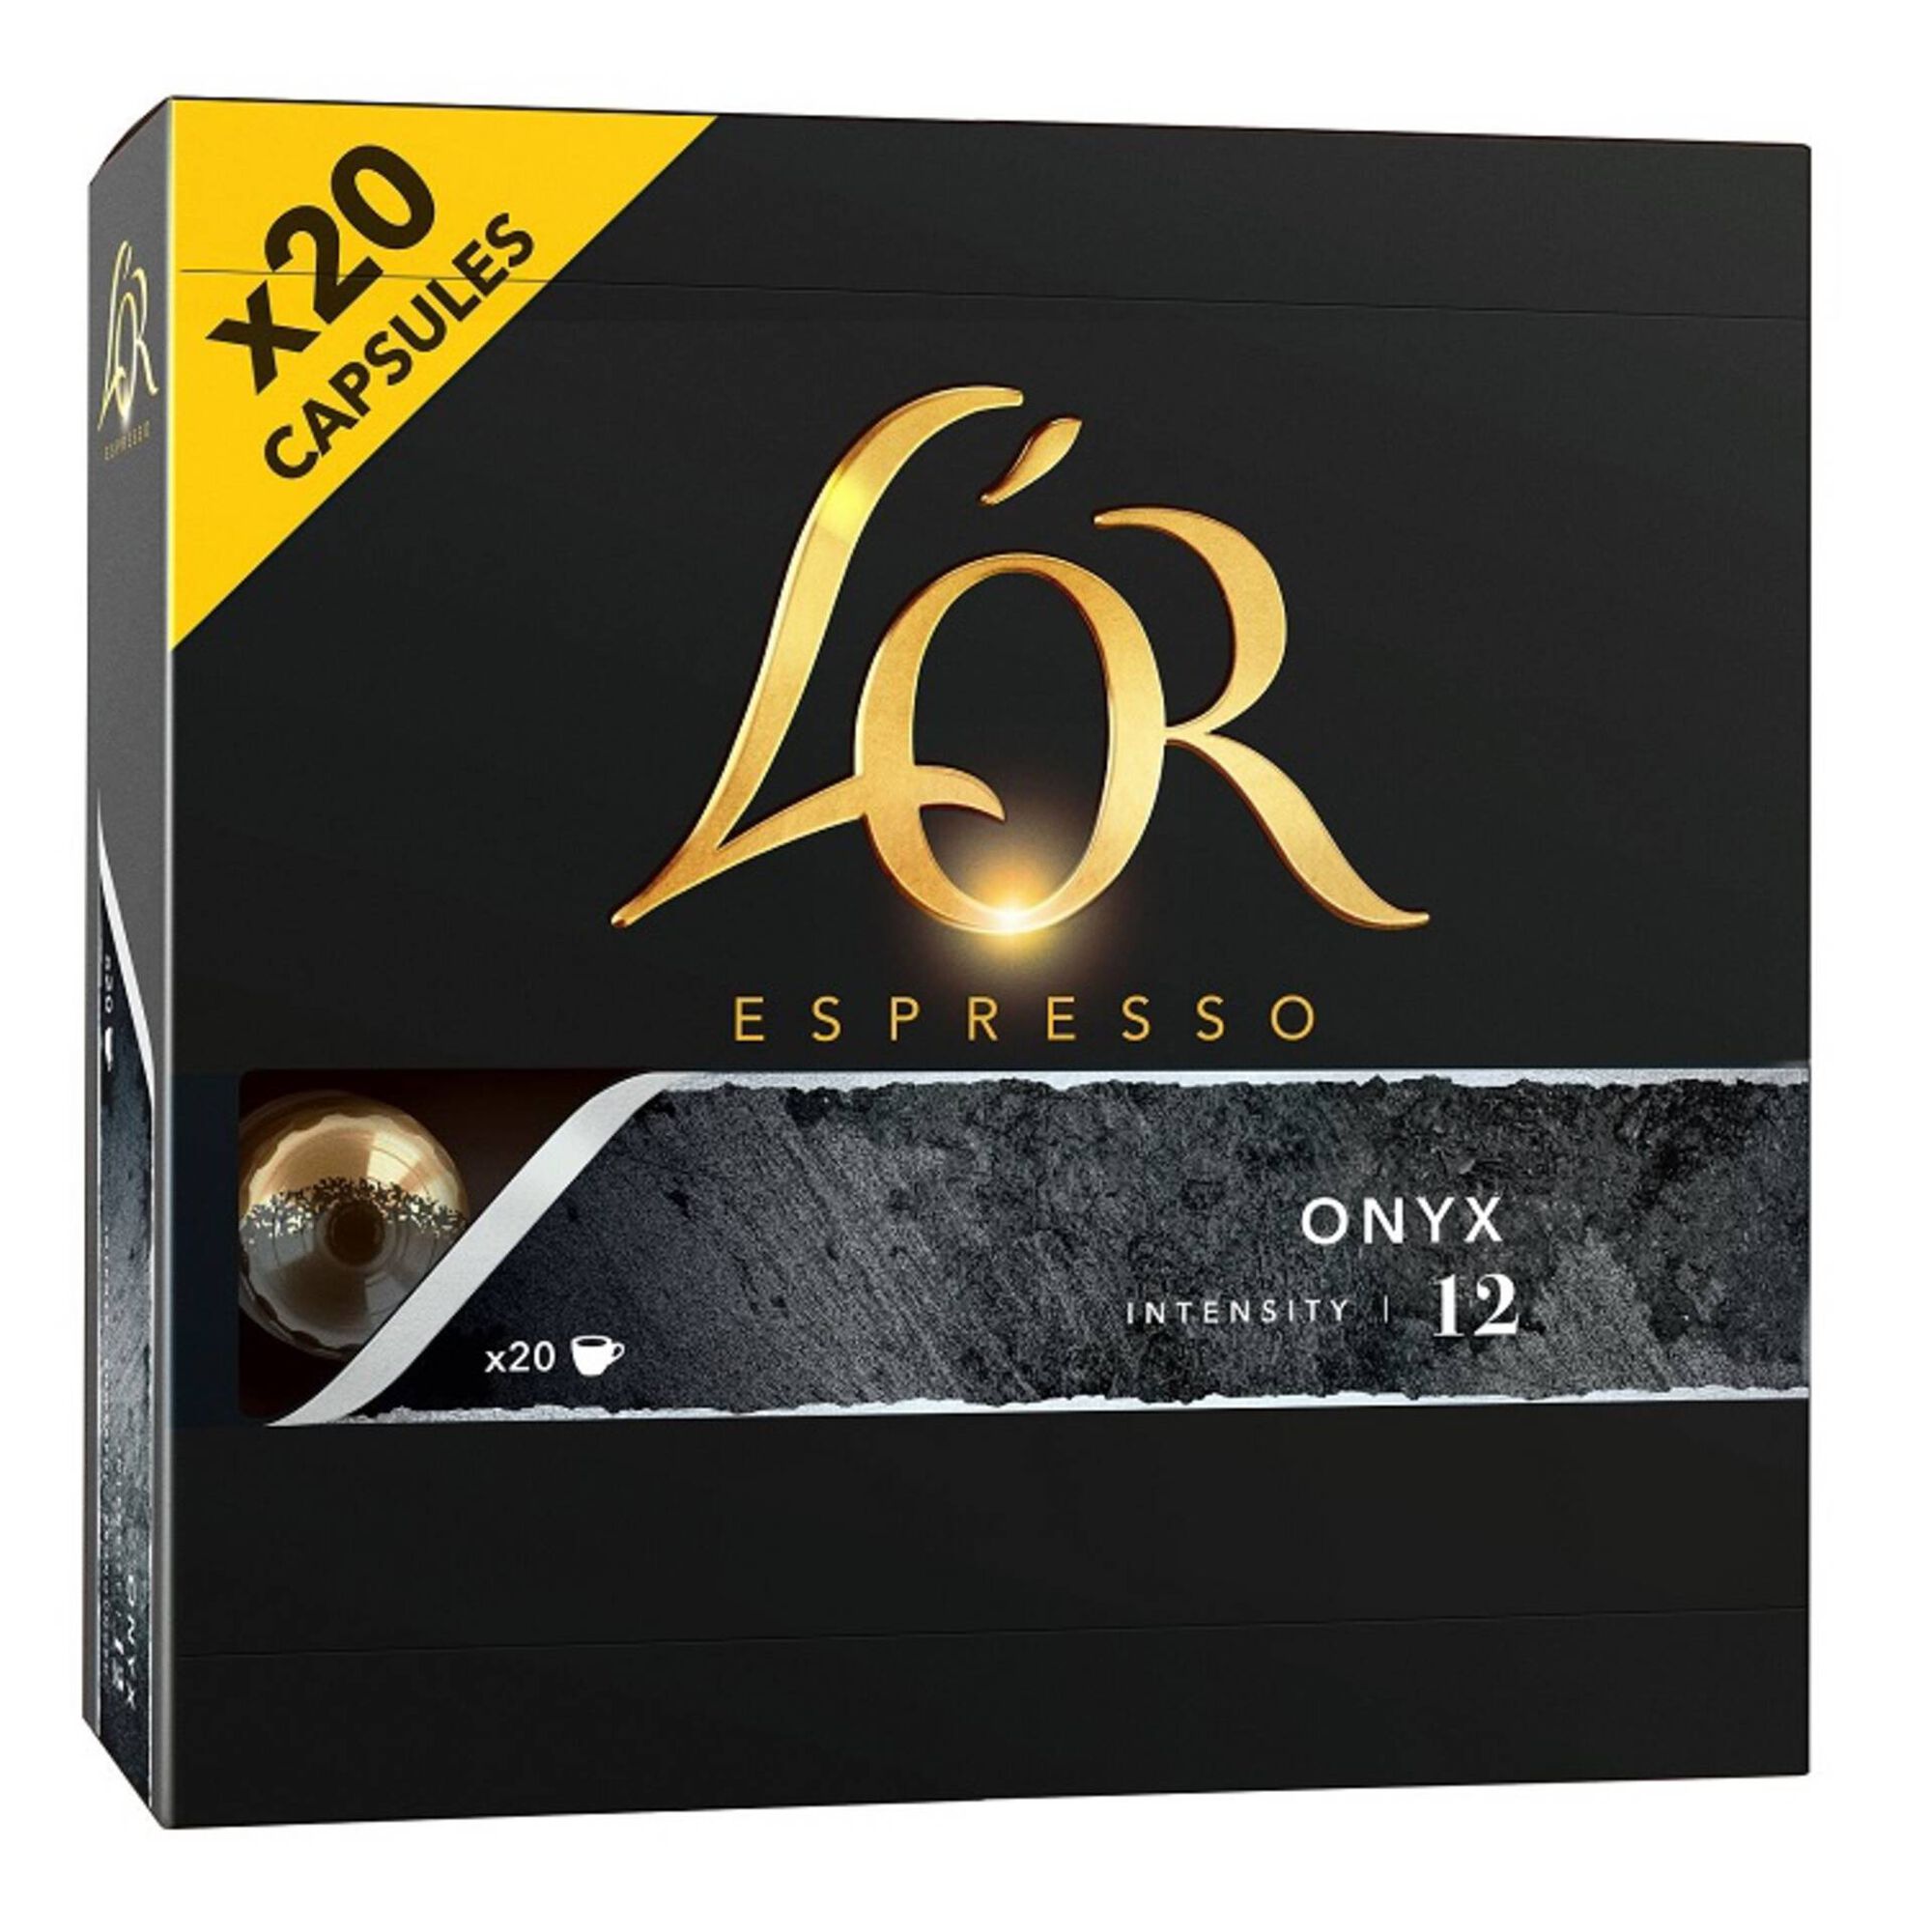 Cápsulas de Café Espresso Onyx Int 12 - emb. 20 un - L'Or